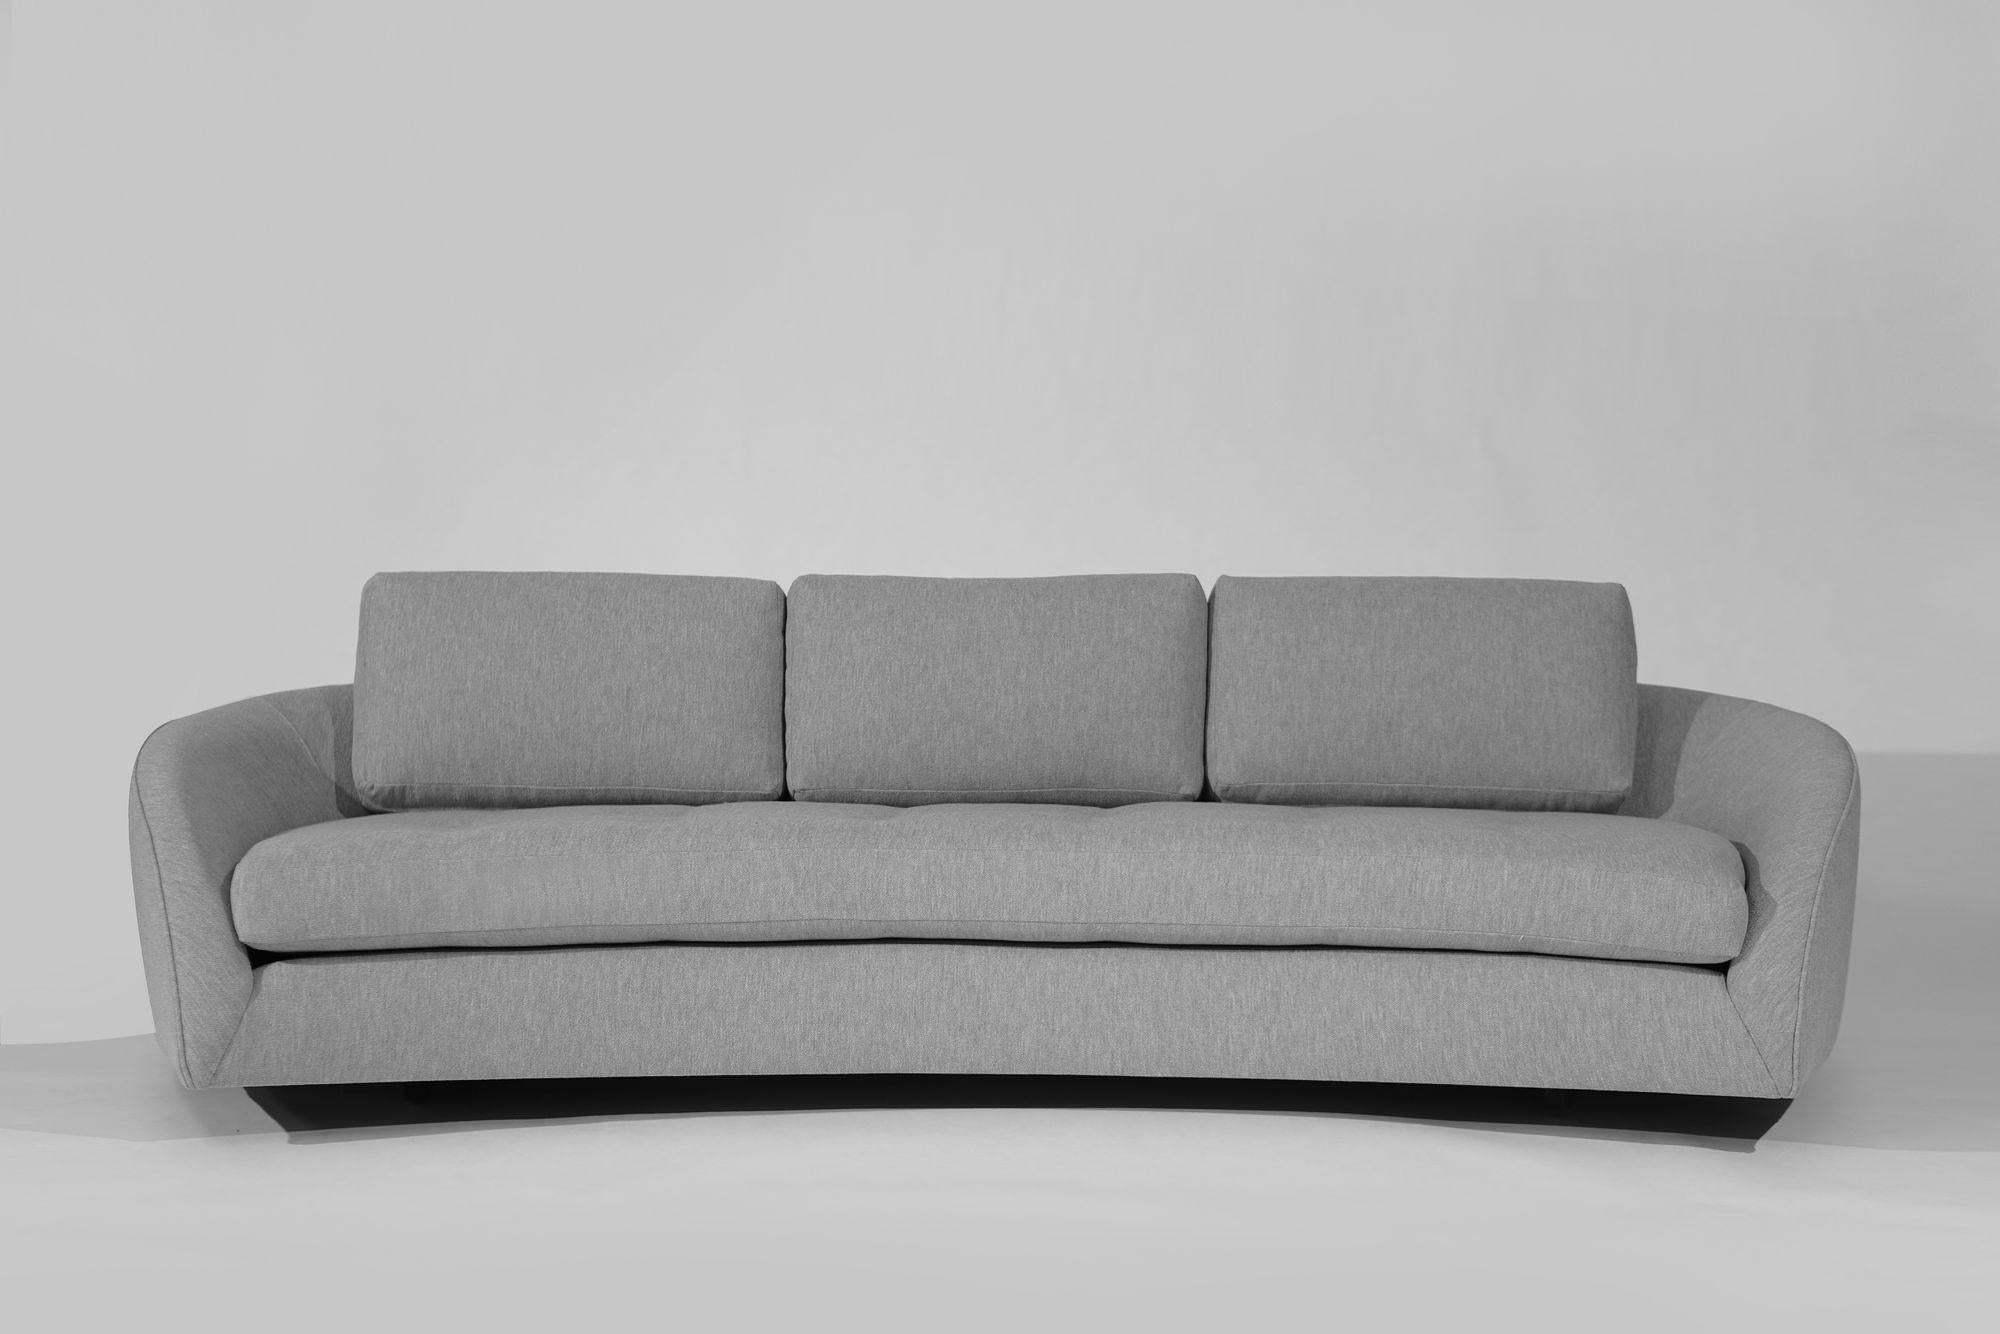 Gönnen Sie sich luxuriösen Komfort mit dem Low-Profile Cloud Sofa, einem zeitlosen Entwurf von Adrian Pearsall für Craft Associates aus der Mitte des 20. Jahrhunderts. Dieses Sofa wurde sorgfältig restauriert und hat eine schlanke Silhouette, die